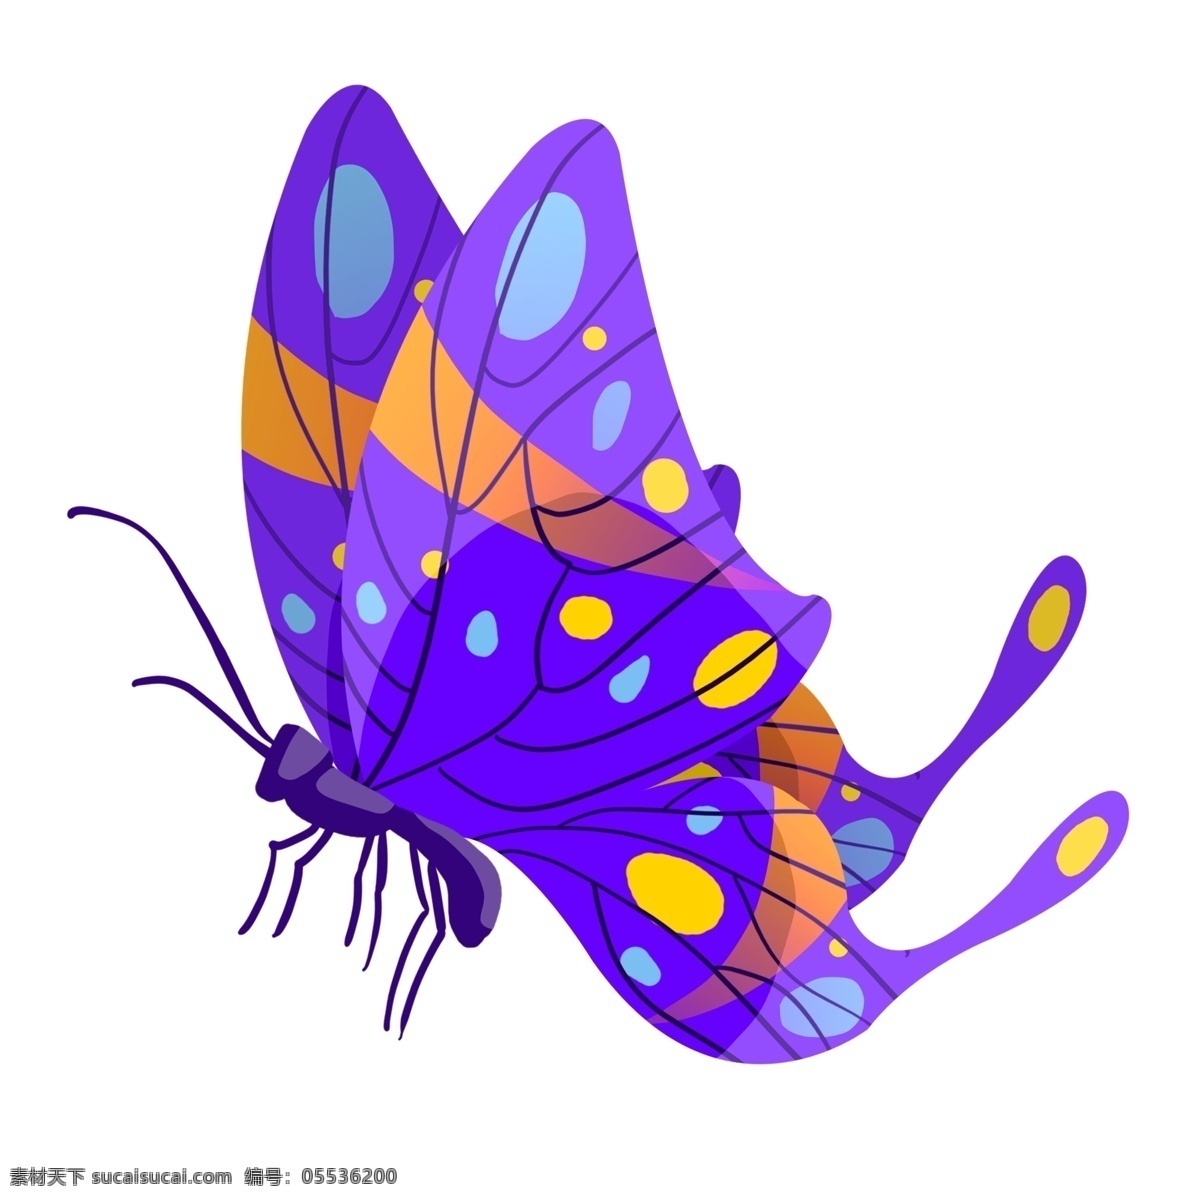 紫色 动物 蝴蝶 插画 紫色的蝴蝶 漂亮的蝴蝶 卡通插画 蝴蝶插画 动物插画 昆虫插画 益虫插画